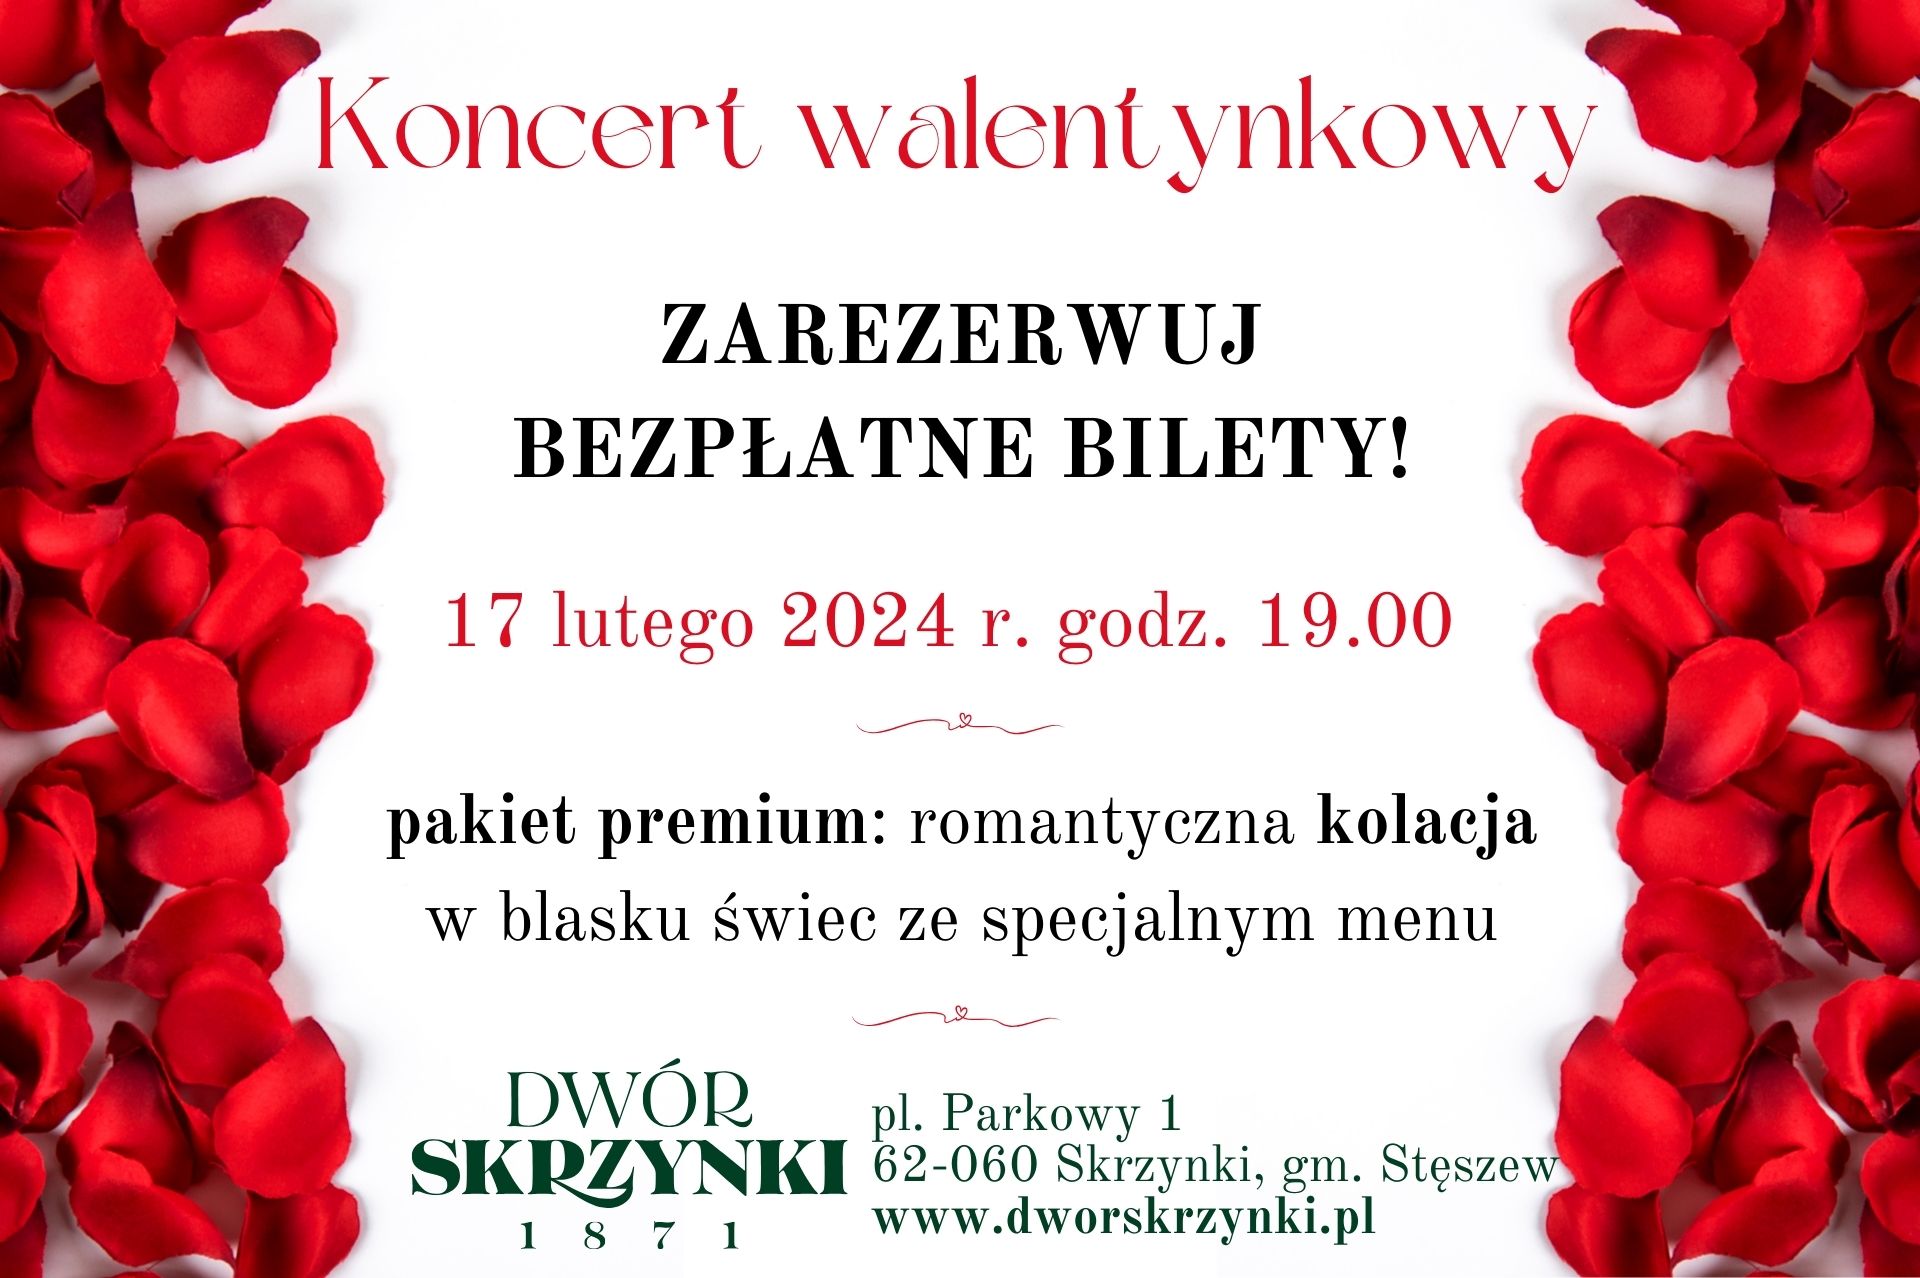 You are currently viewing Zarezerwuj bezpłatne wejściówki na wyjątkowy koncert walentynkowy